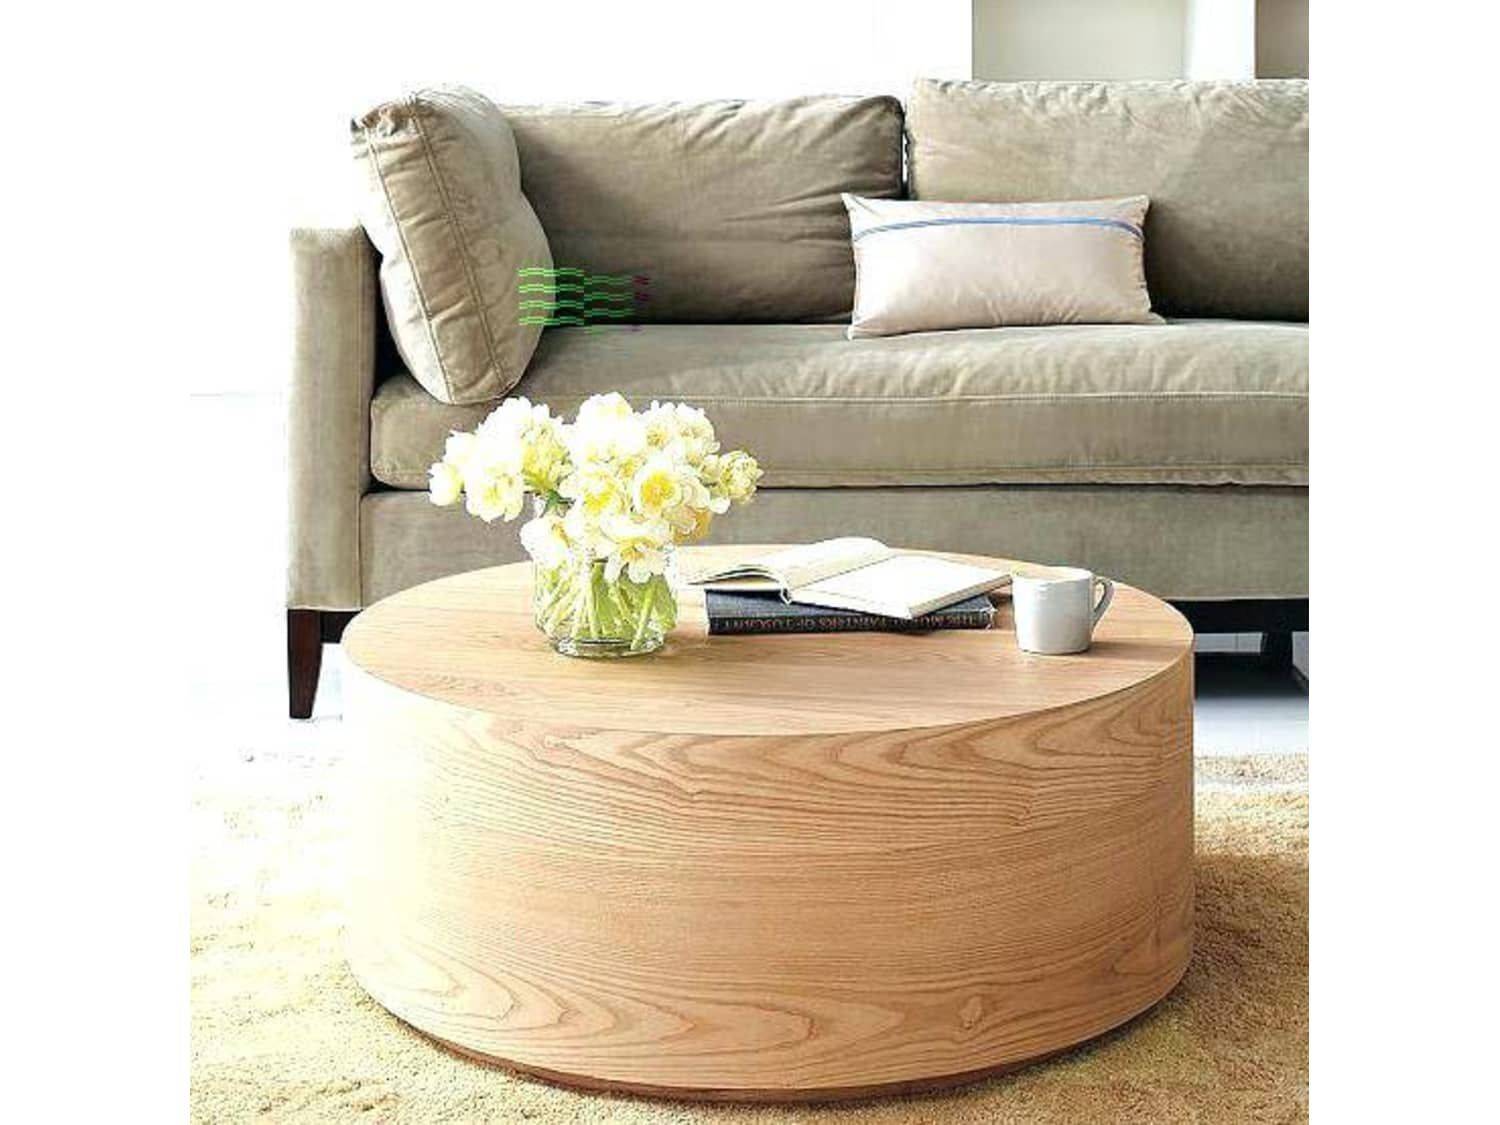 Mẫu 12: Bàn trà tròn làm từ gỗ công nghiệp nguyên khối giúp nâng tầm đẳng cấp cho phòng khách nhà bạn